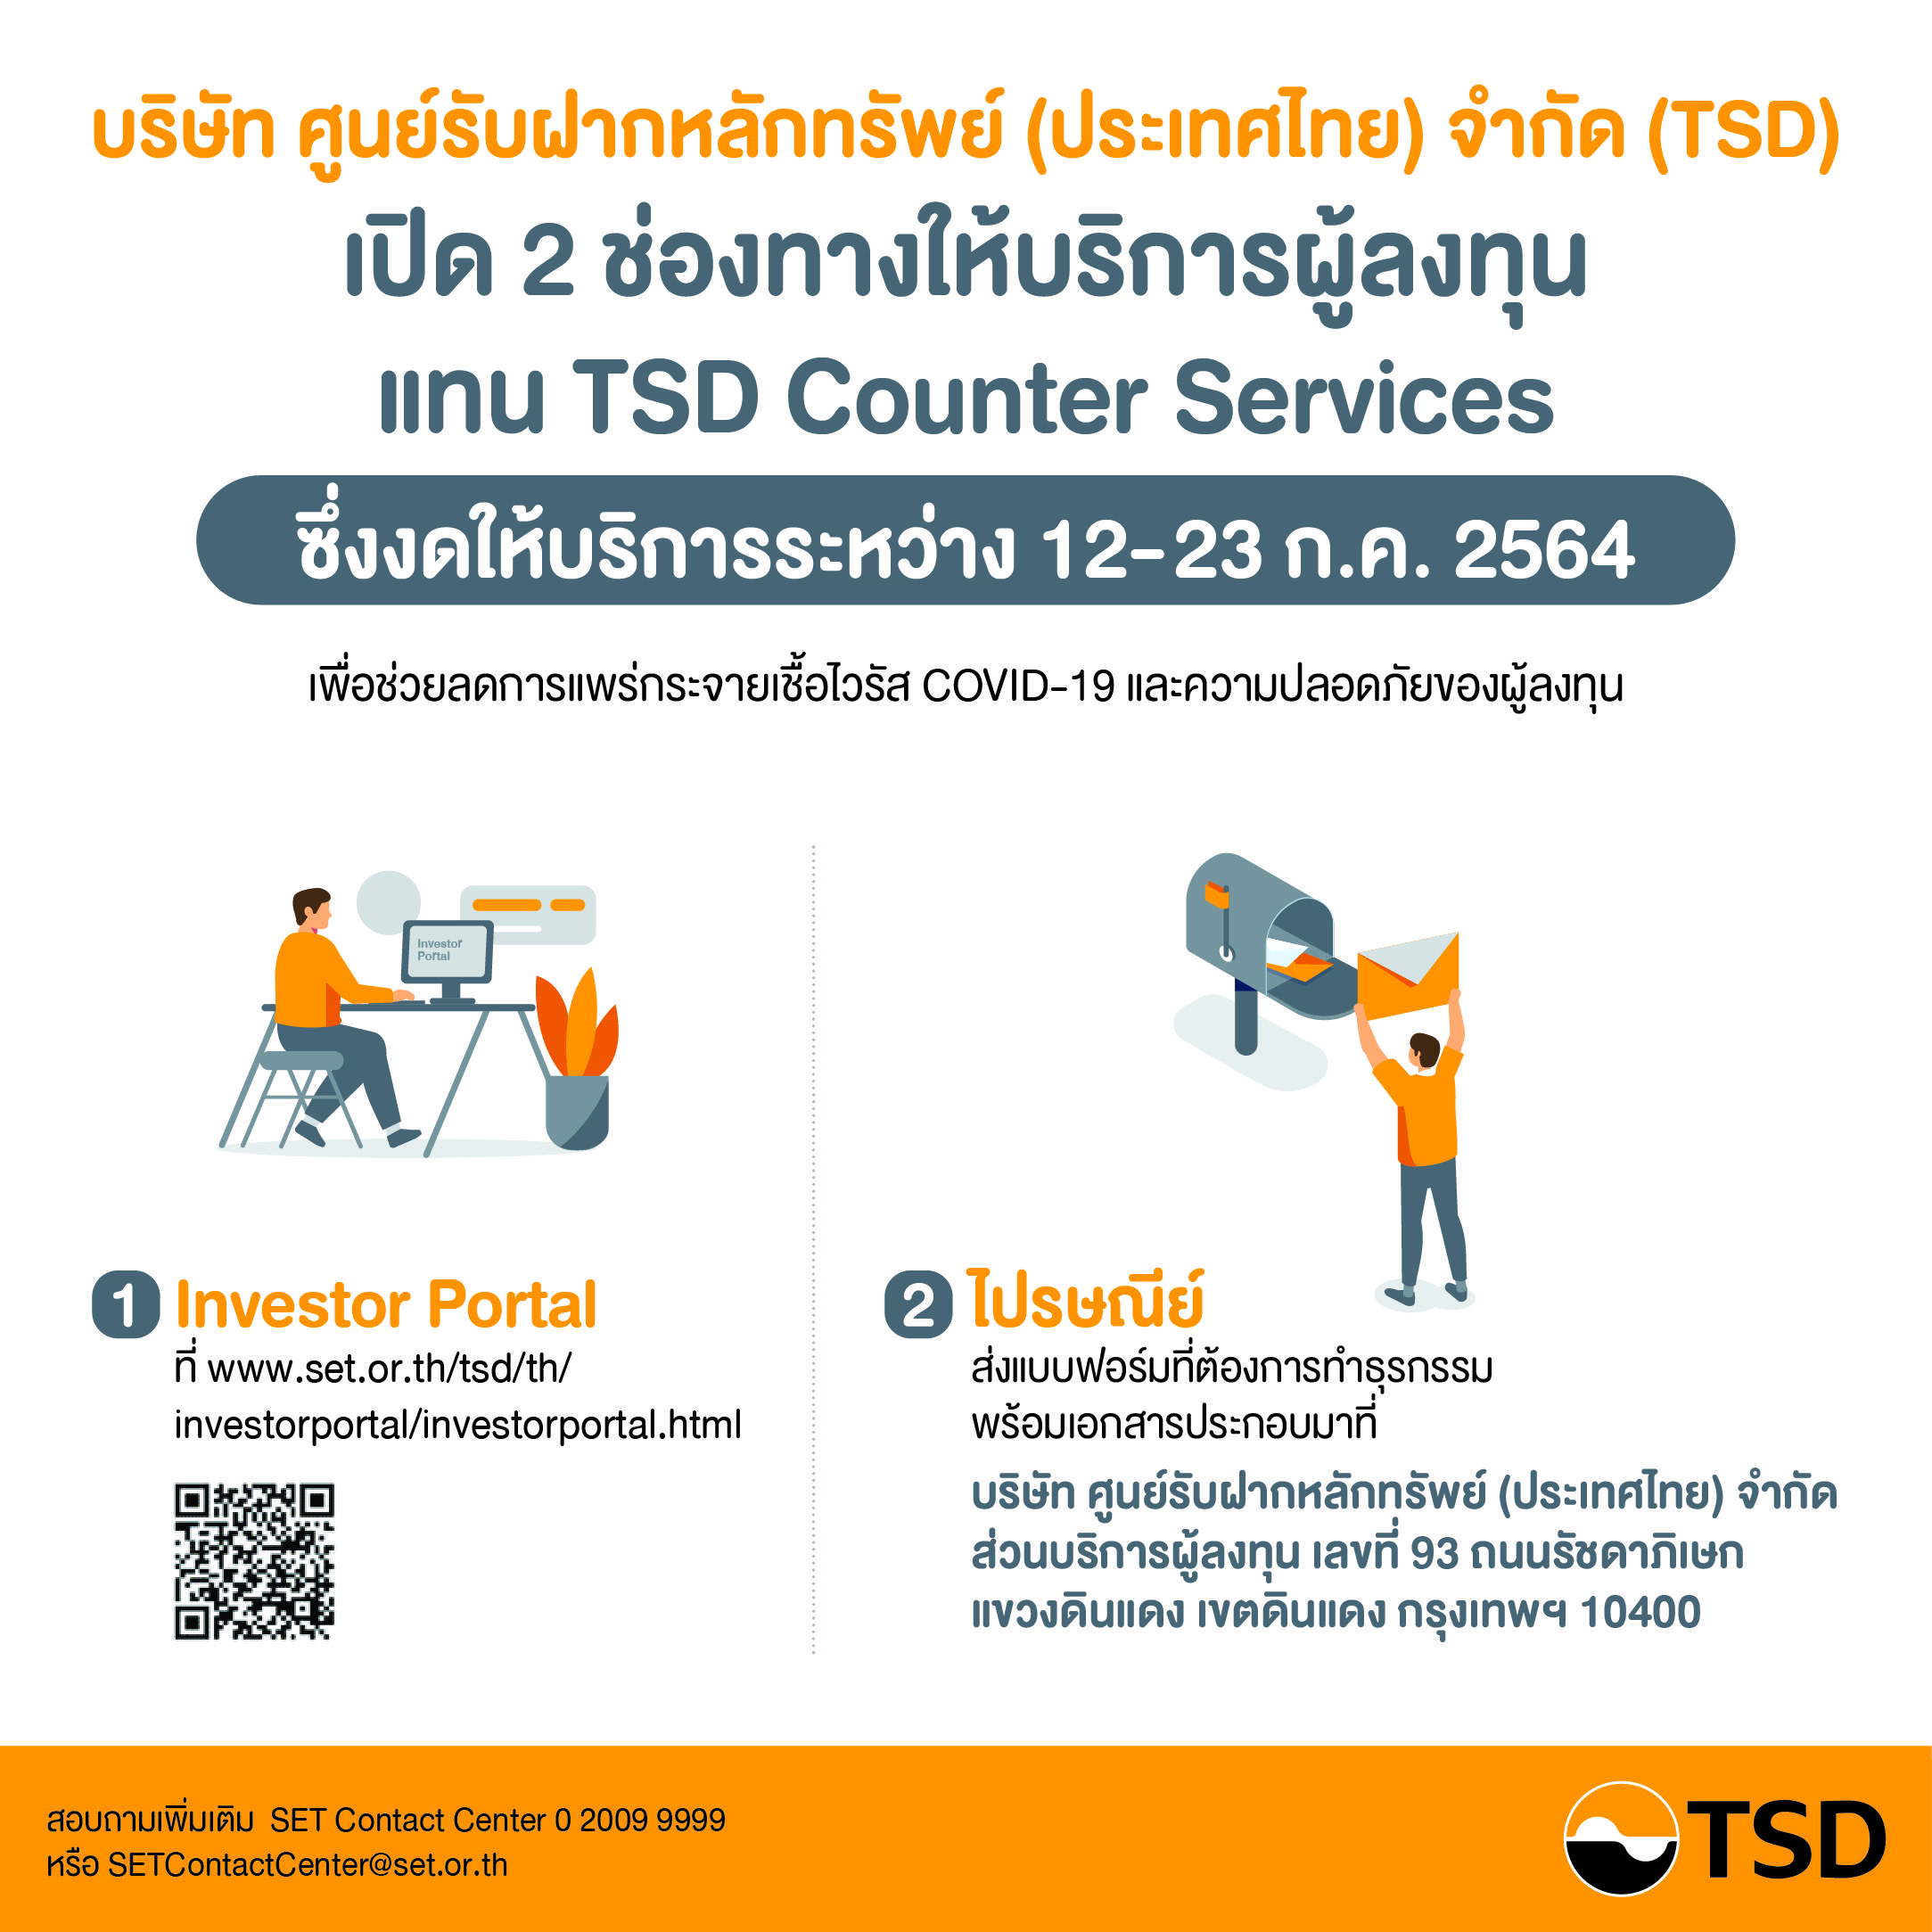 TSD เปิด 2 ช่องทางให้บริการผู้ลงทุน 12-23 ก.ค. 2564 ลดความเสี่ยง COVID-19 เพื่อความปลอดภัยของผู้ลงทุน